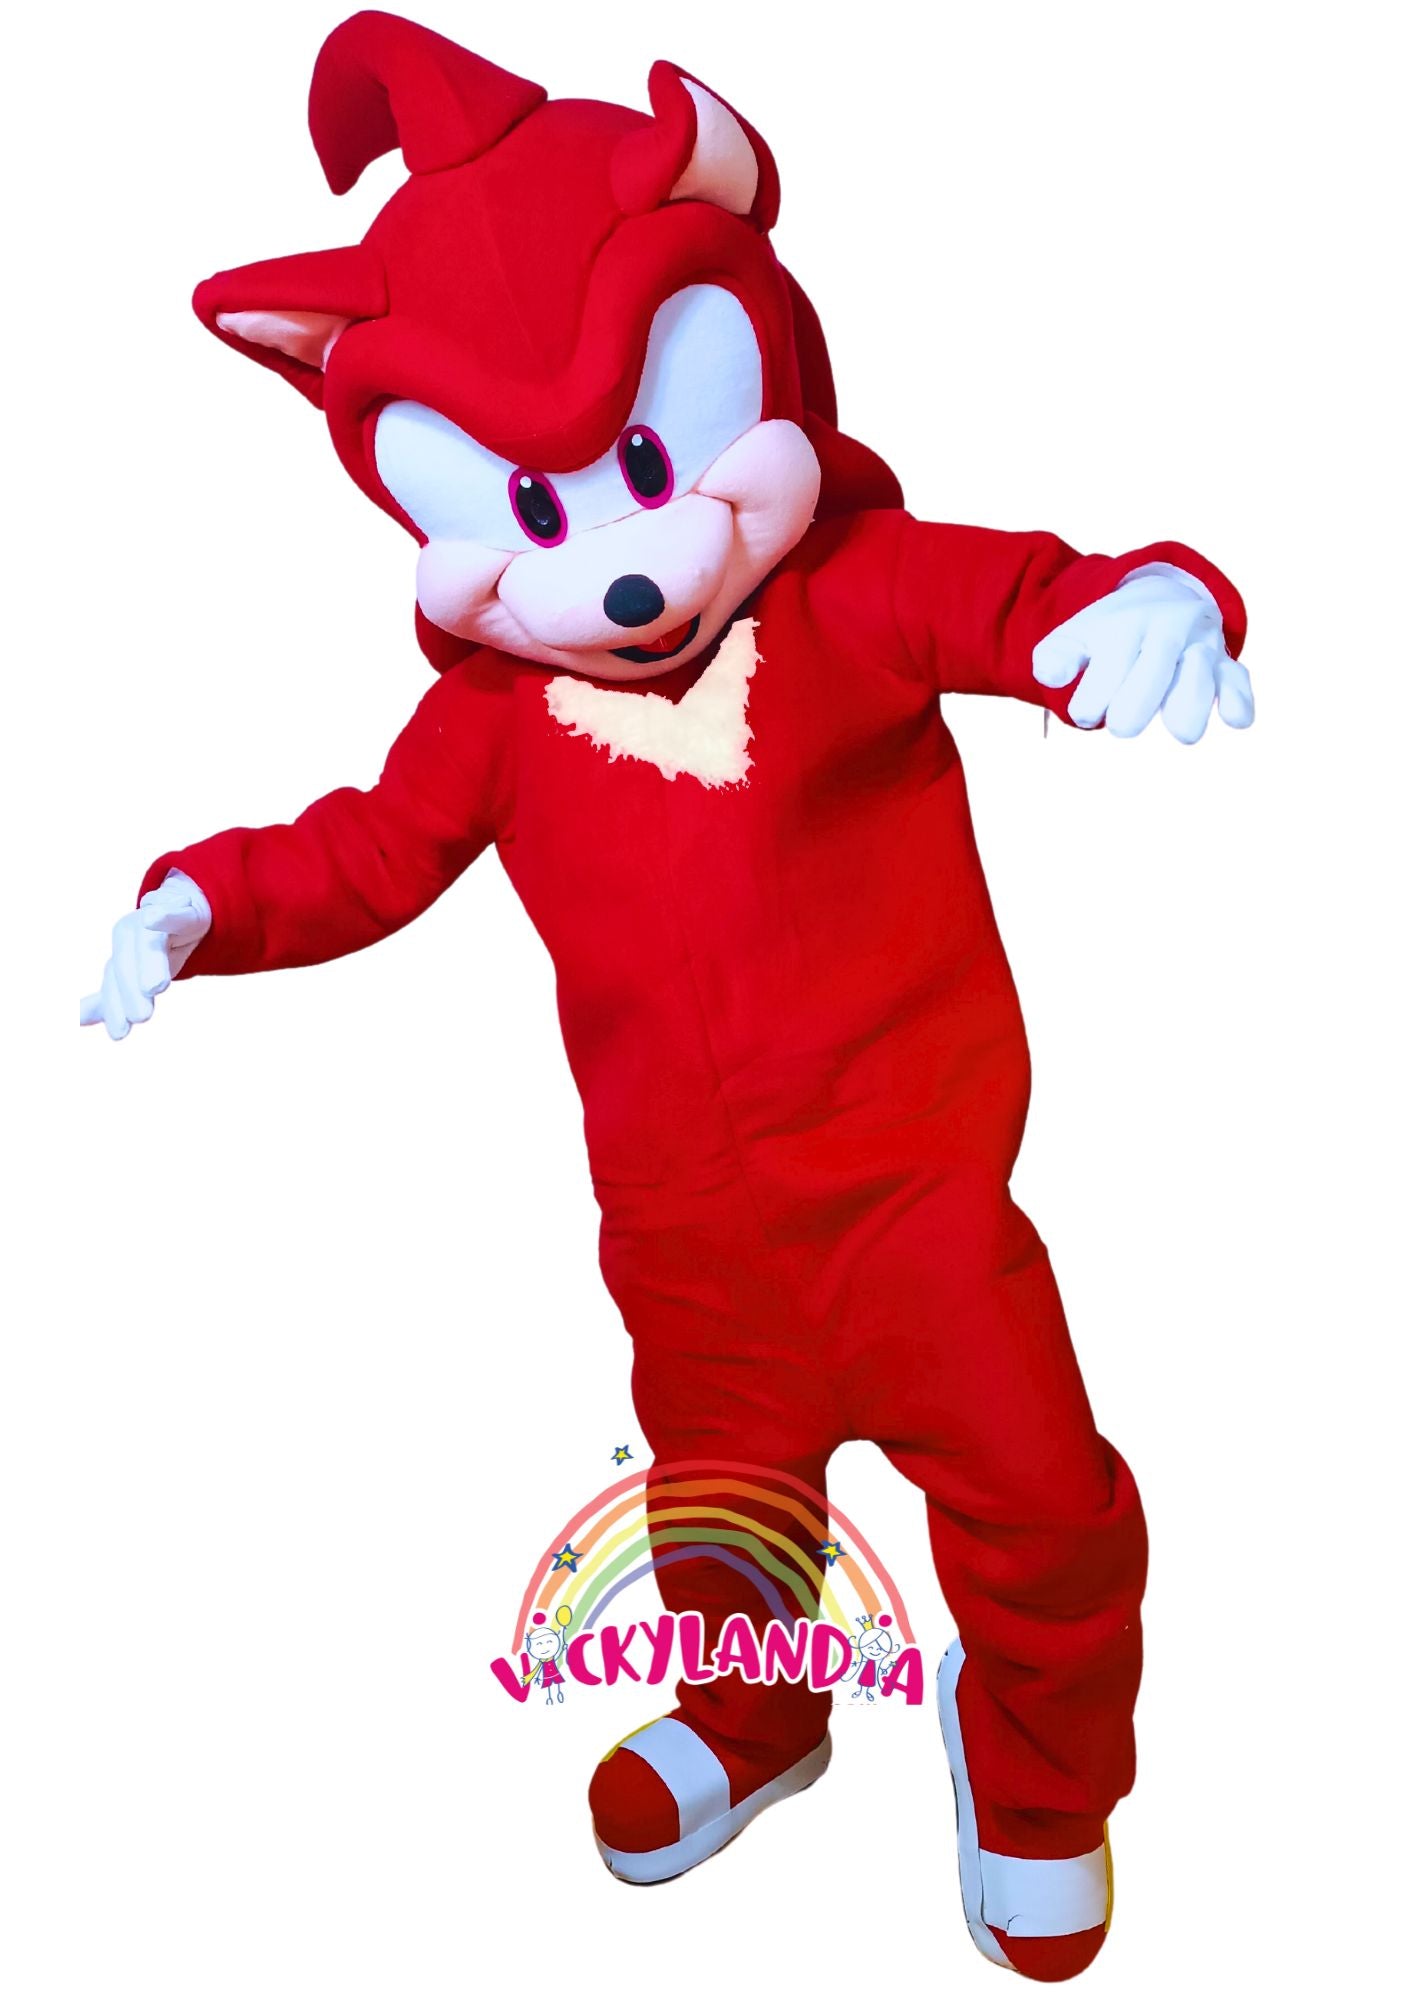 Descubre la magia de nuestro muñeco publicitario de Antihéroe Erizo Rojo en Vickylandia. Son disfraces cabezones perfectos para fiestas infantiles, shows, cumpleaños, estrategias publicitarias, espectáculos, cabalgatas y cualquier tipo de evento.